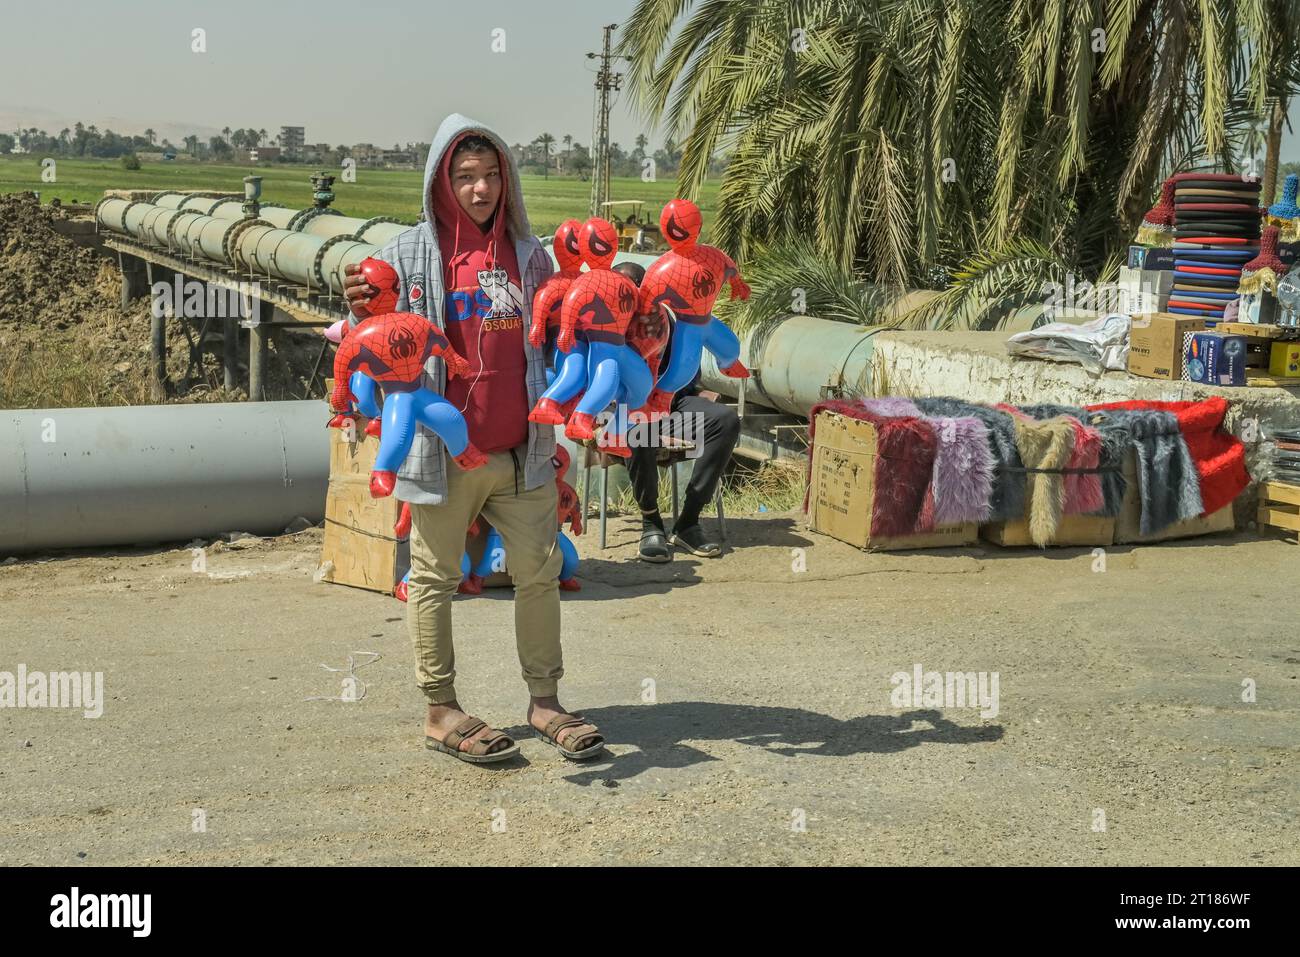 Straßenszene, Kinderarbeit, junger Mann verkauft Spiderman Figuren, Strasse 75 zwischen Luxor und Qina, Ägypten Stock Photo